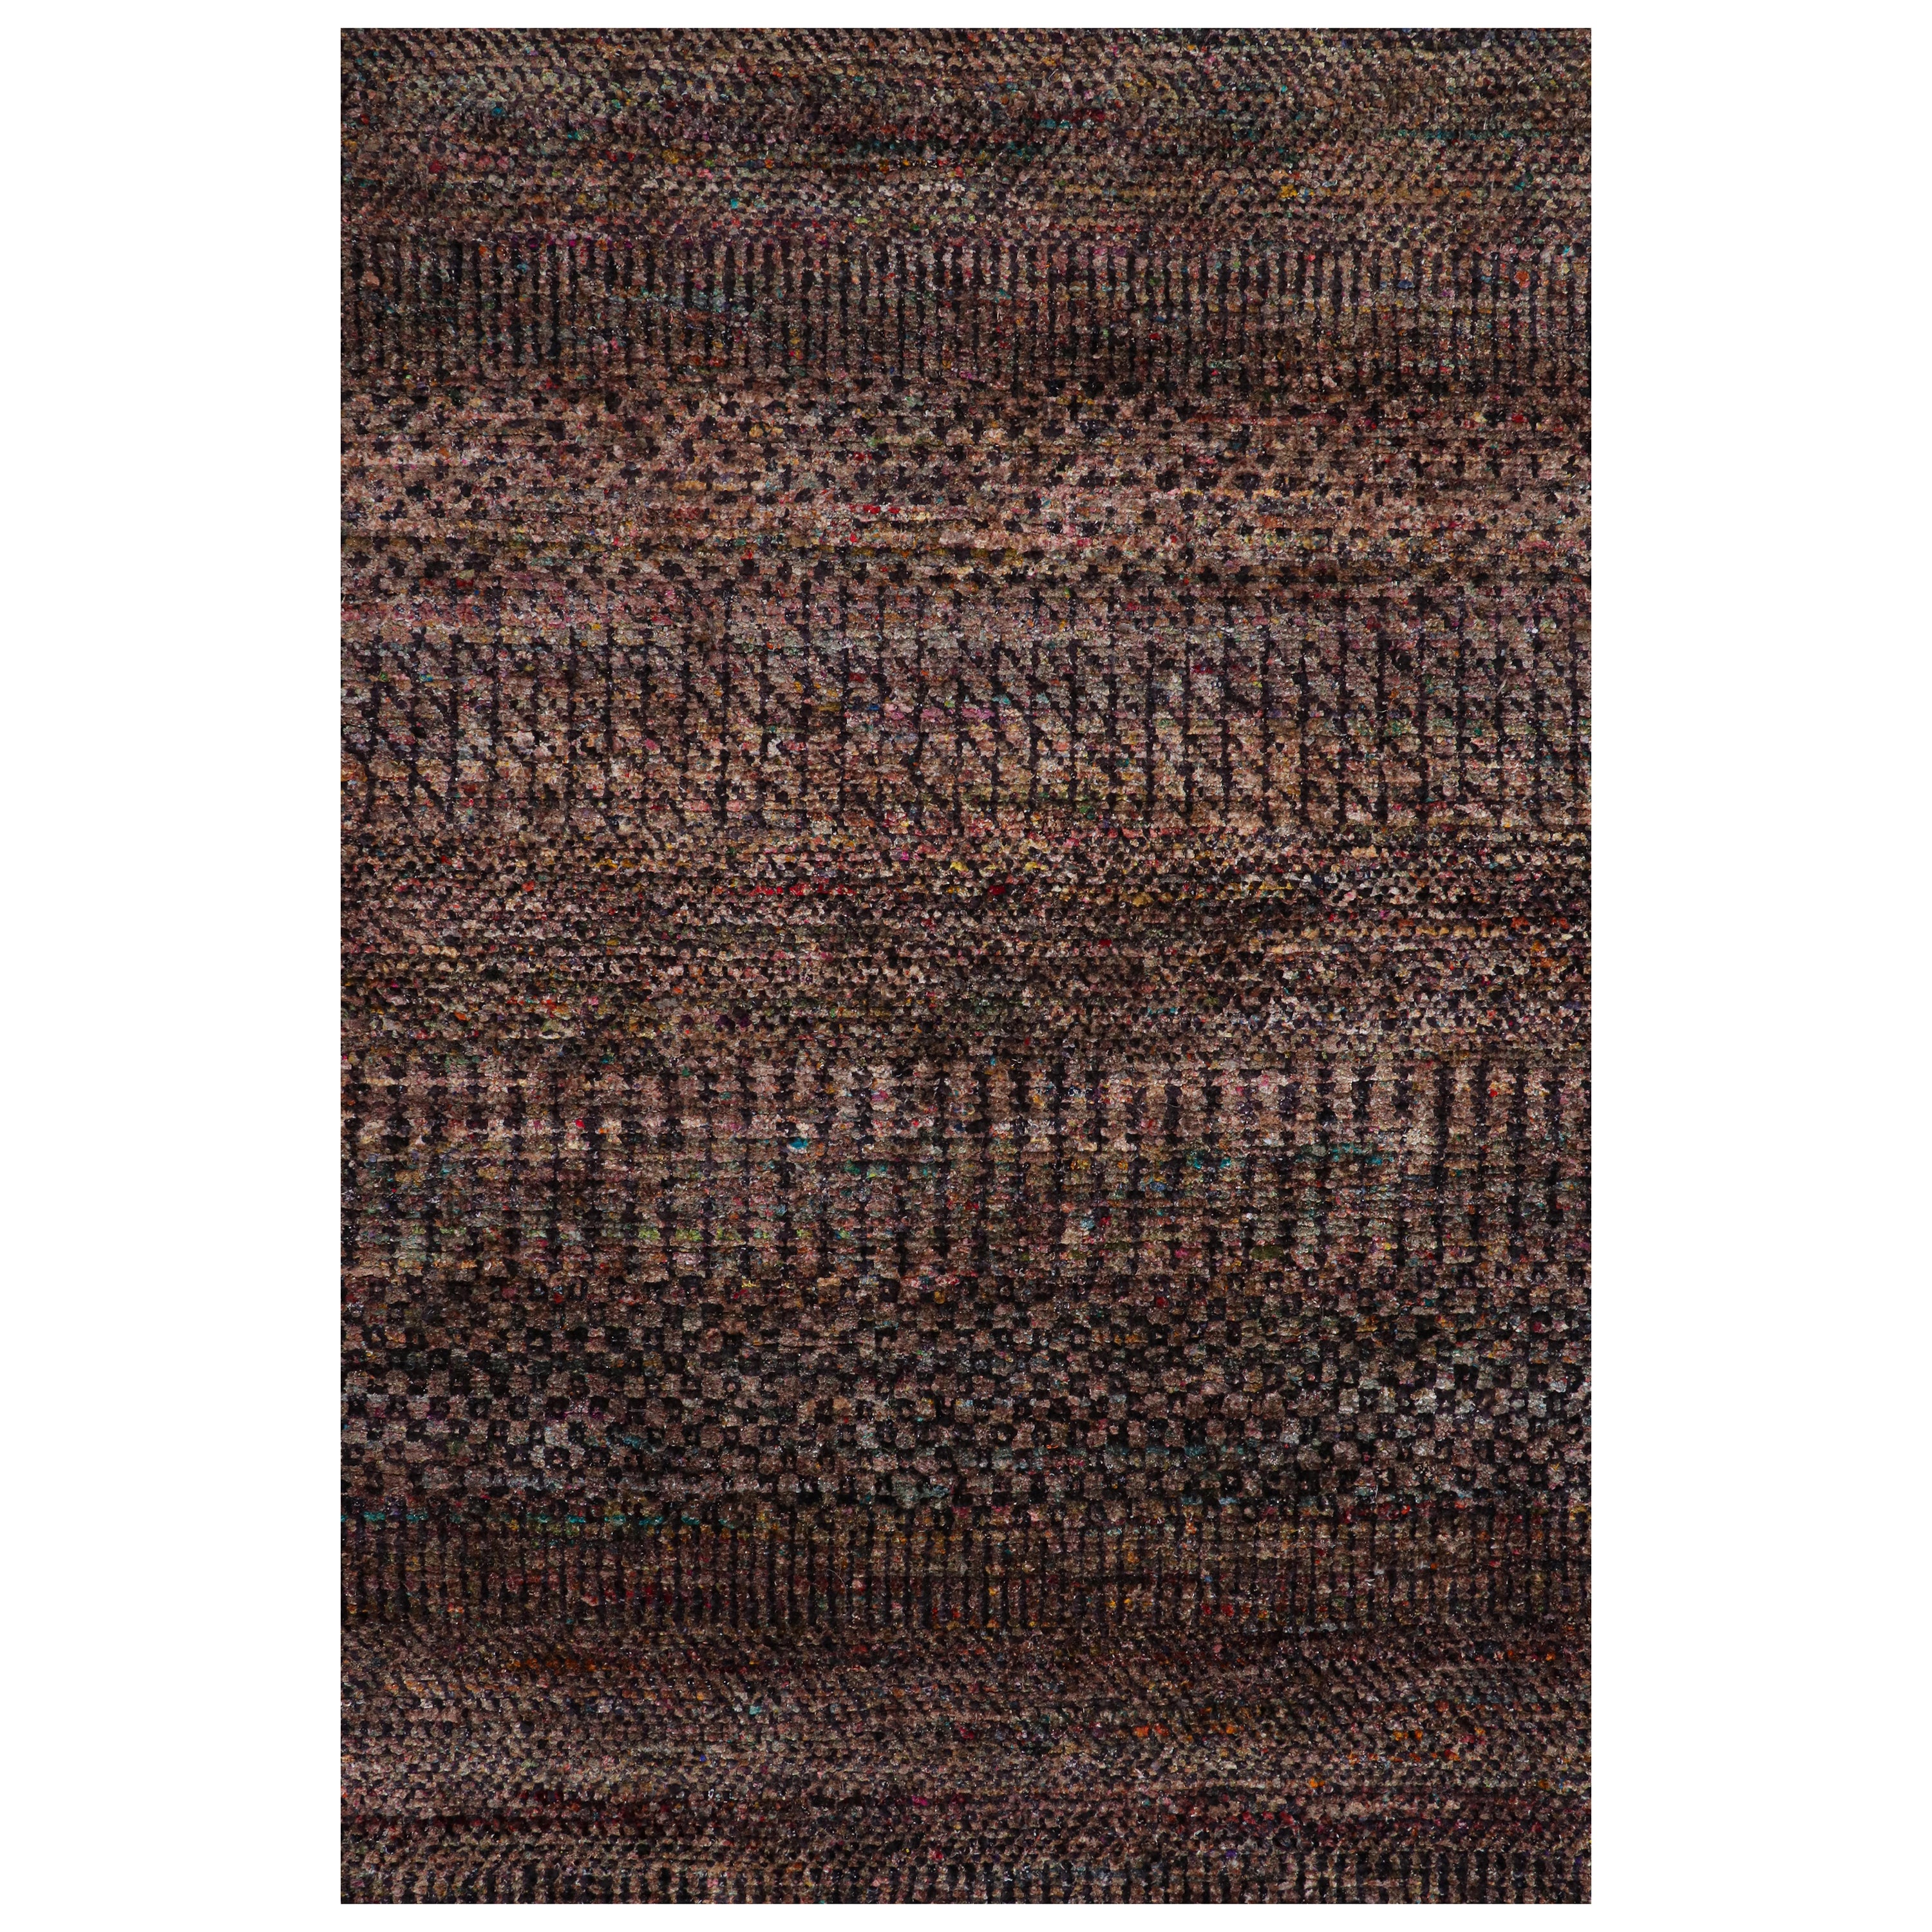 Rug & Kilim's Modern Textural Rug in Lila mit mehrfarbigen Schlieren